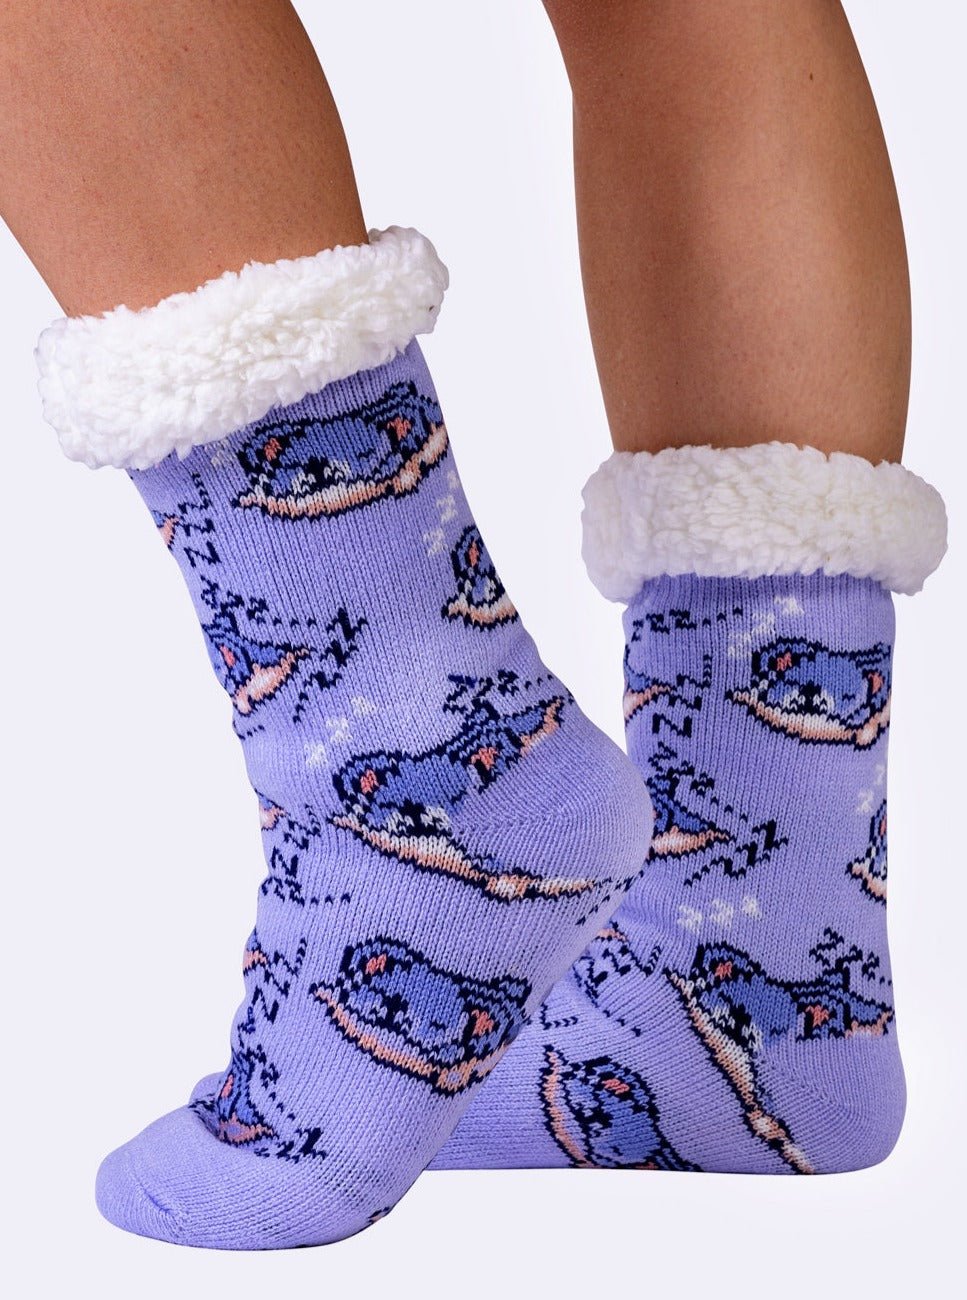 NEW Koala Fluffy Slipper Socks - Shnugz